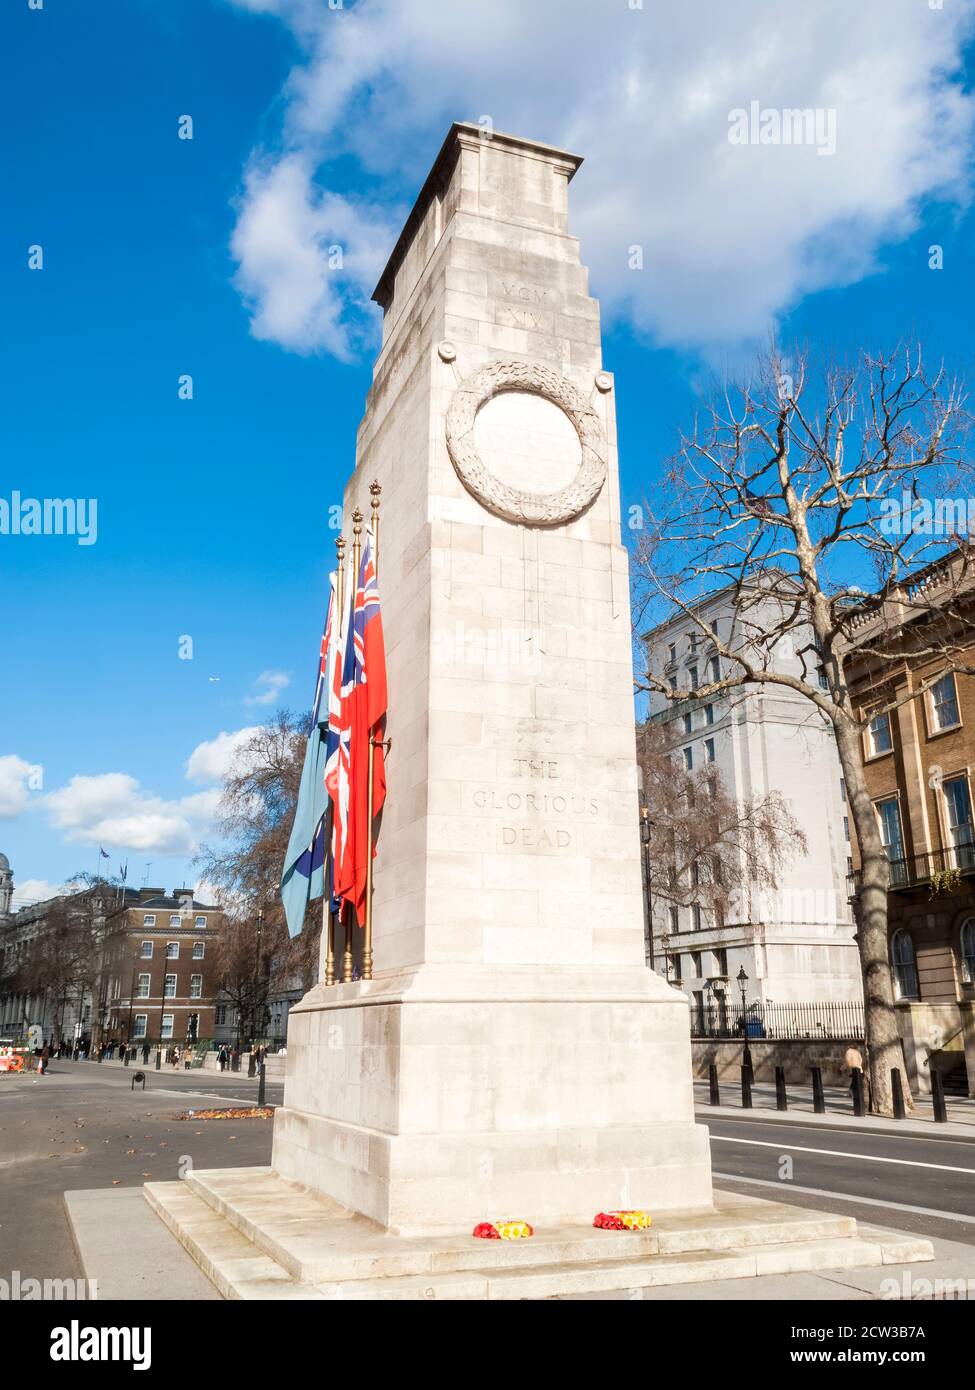 Londra, Inghilterra, Regno Unito, 1 marzo 2010 : il memoriale di guerra britannico Cenotafh a Whitehall per ricordare i morti in entrambe le guerre mondiali sulla remembrance Domenica whic Foto Stock